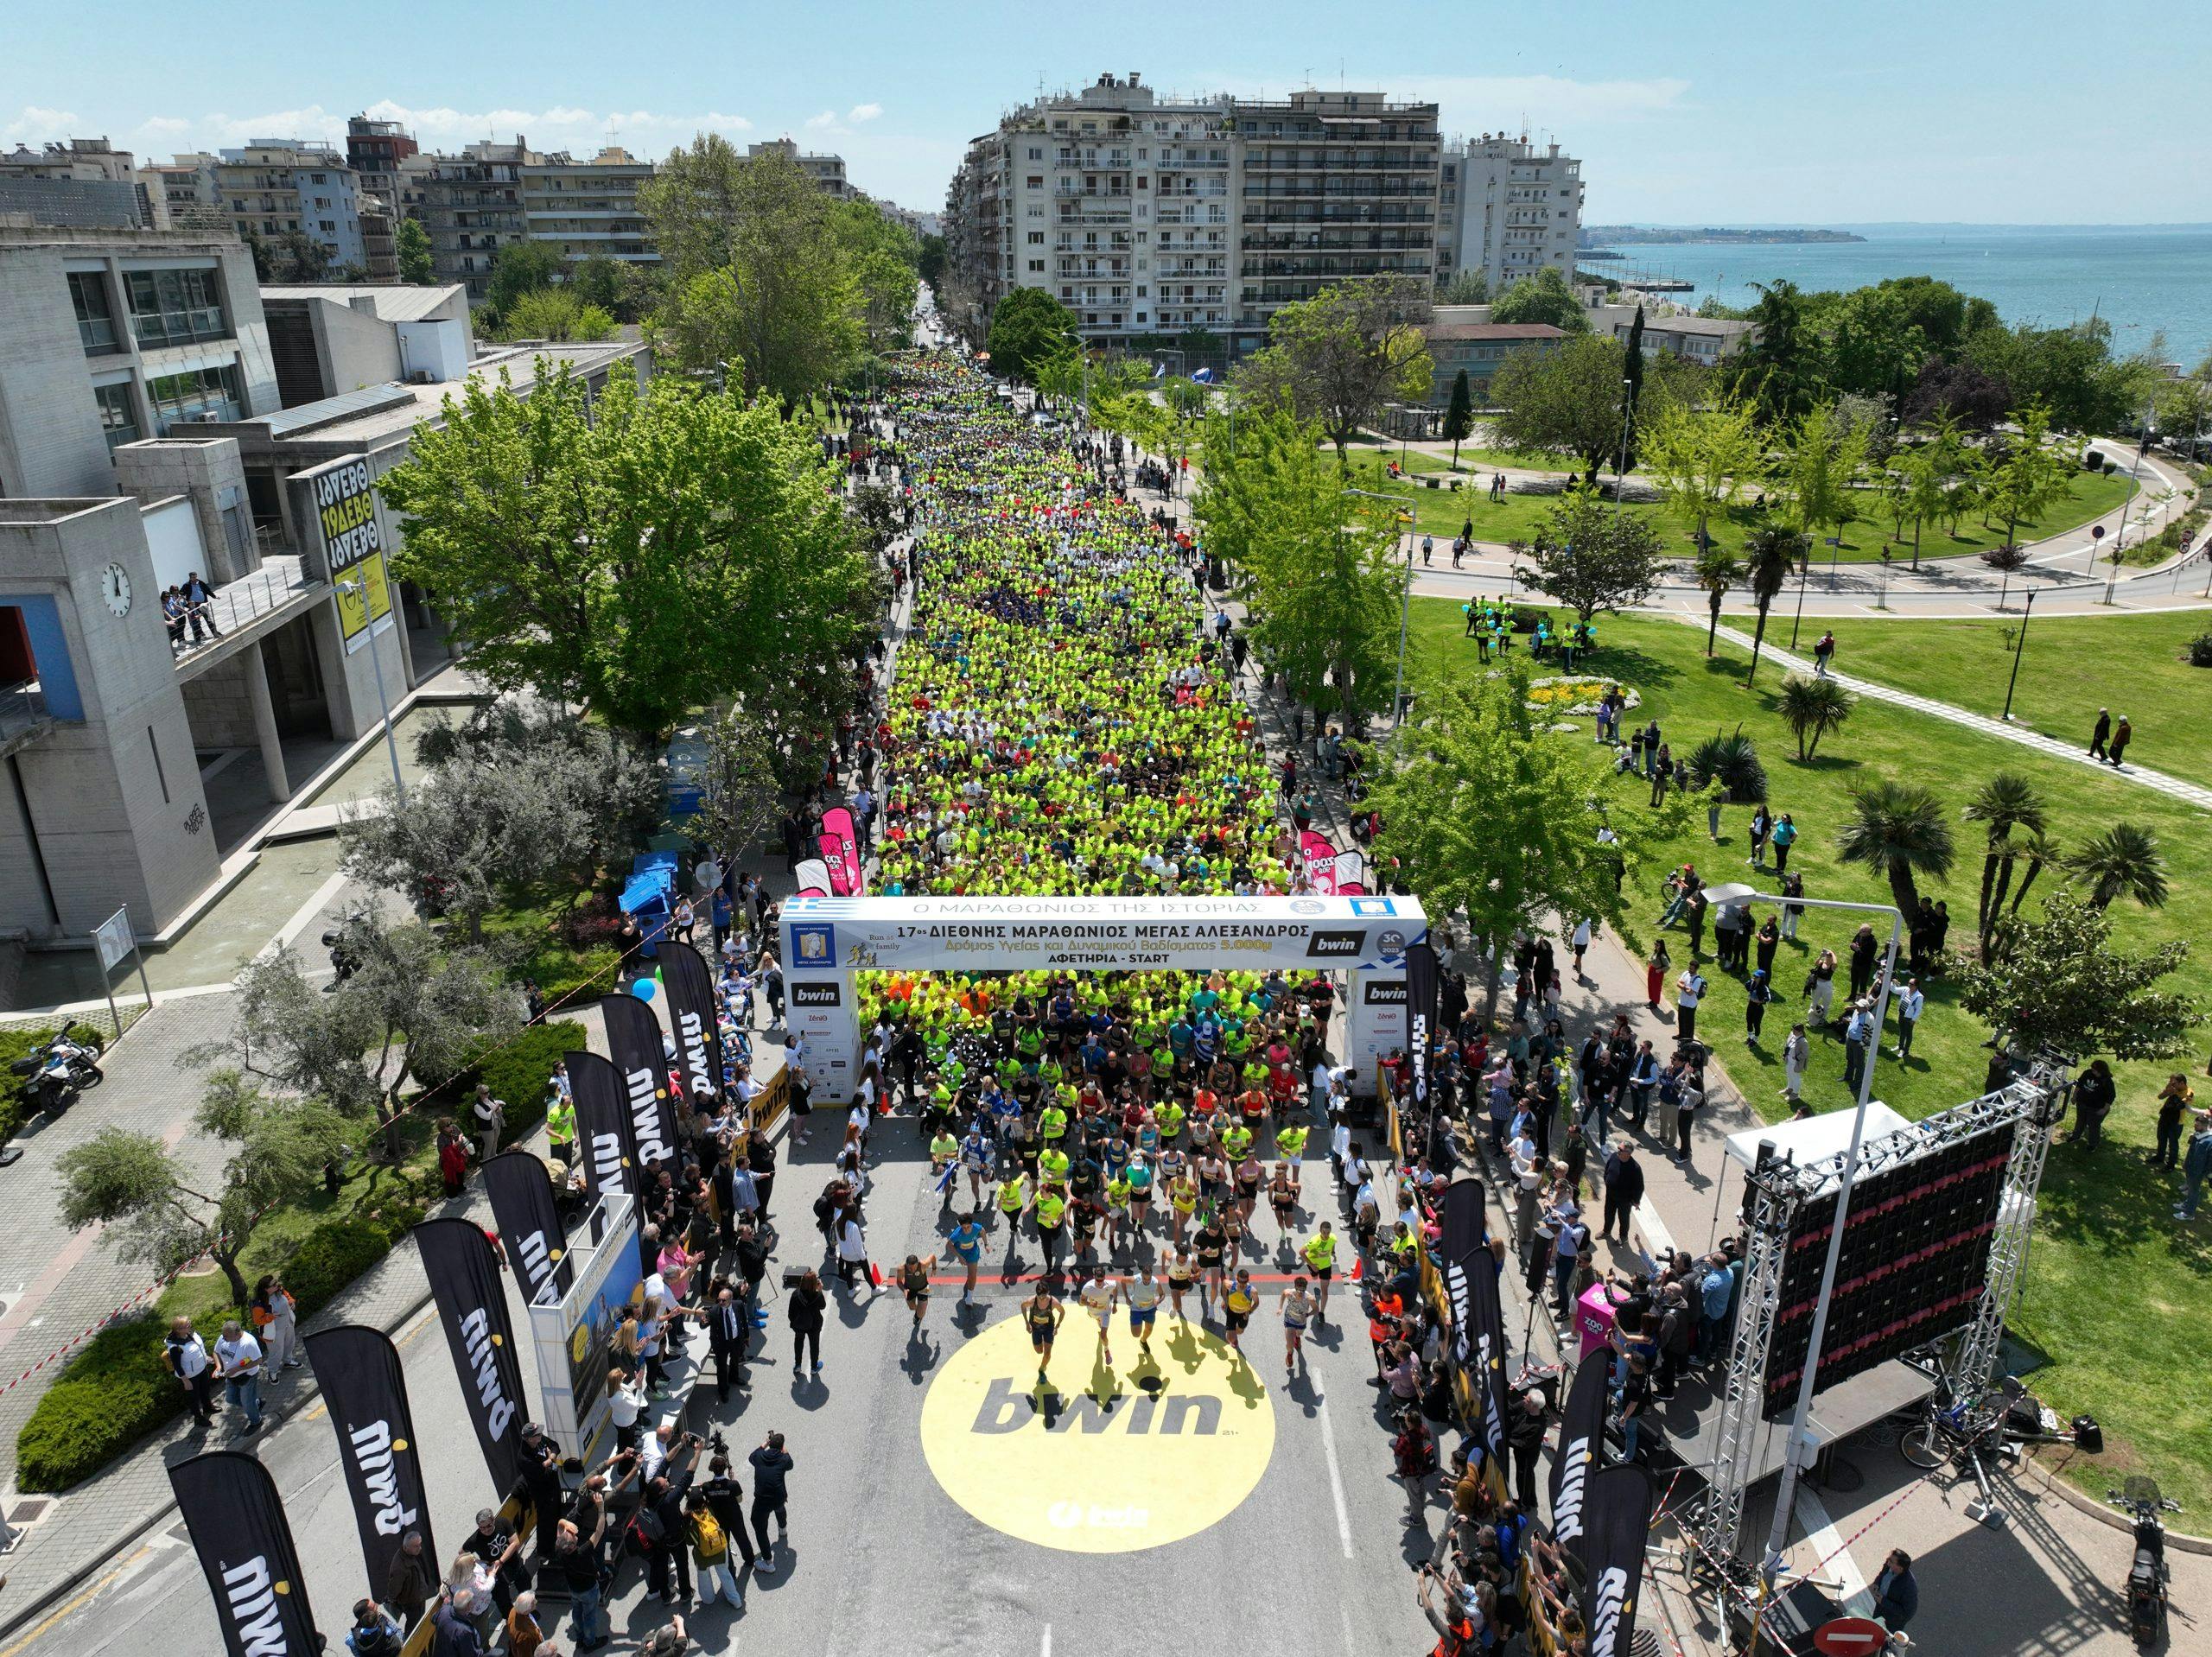 18ος Διεθνής Μαραθώνιος Θεσσαλονίκης: Το πρόγραμμα της διοργάνωσης